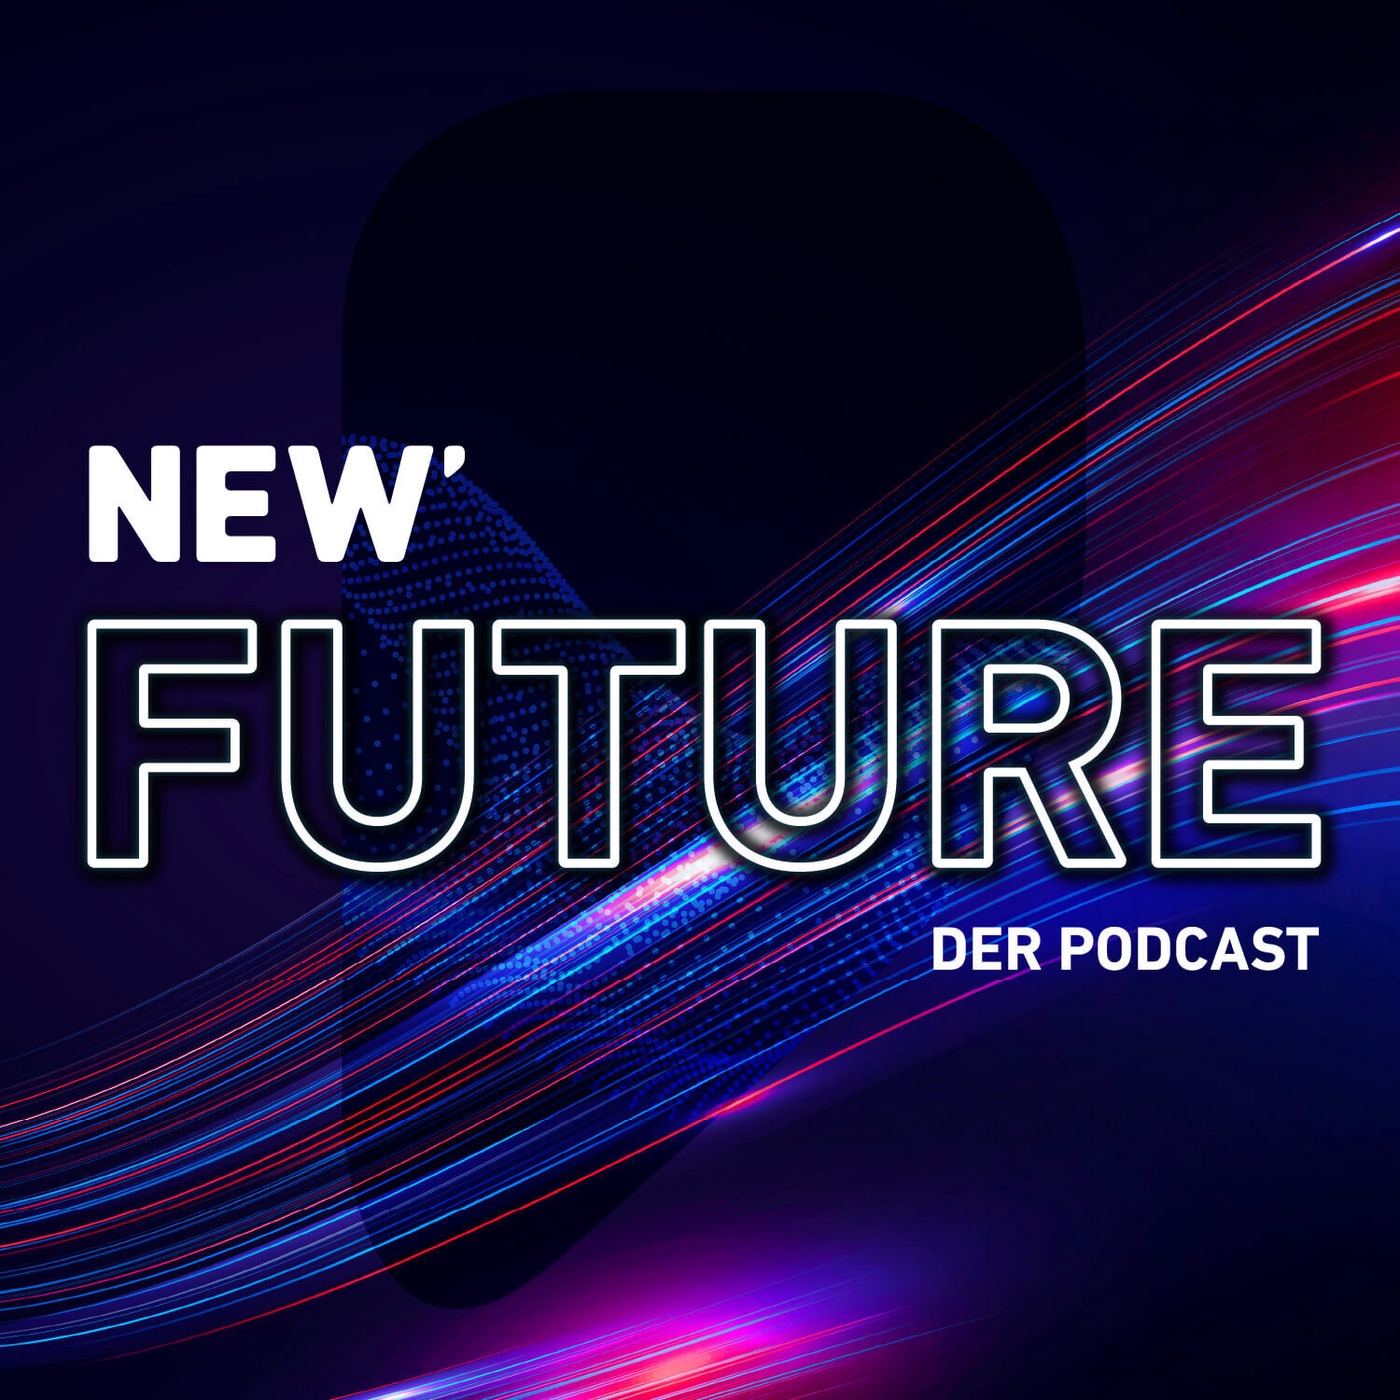 NEW Future – Der Podcast über deine Welt von morgen